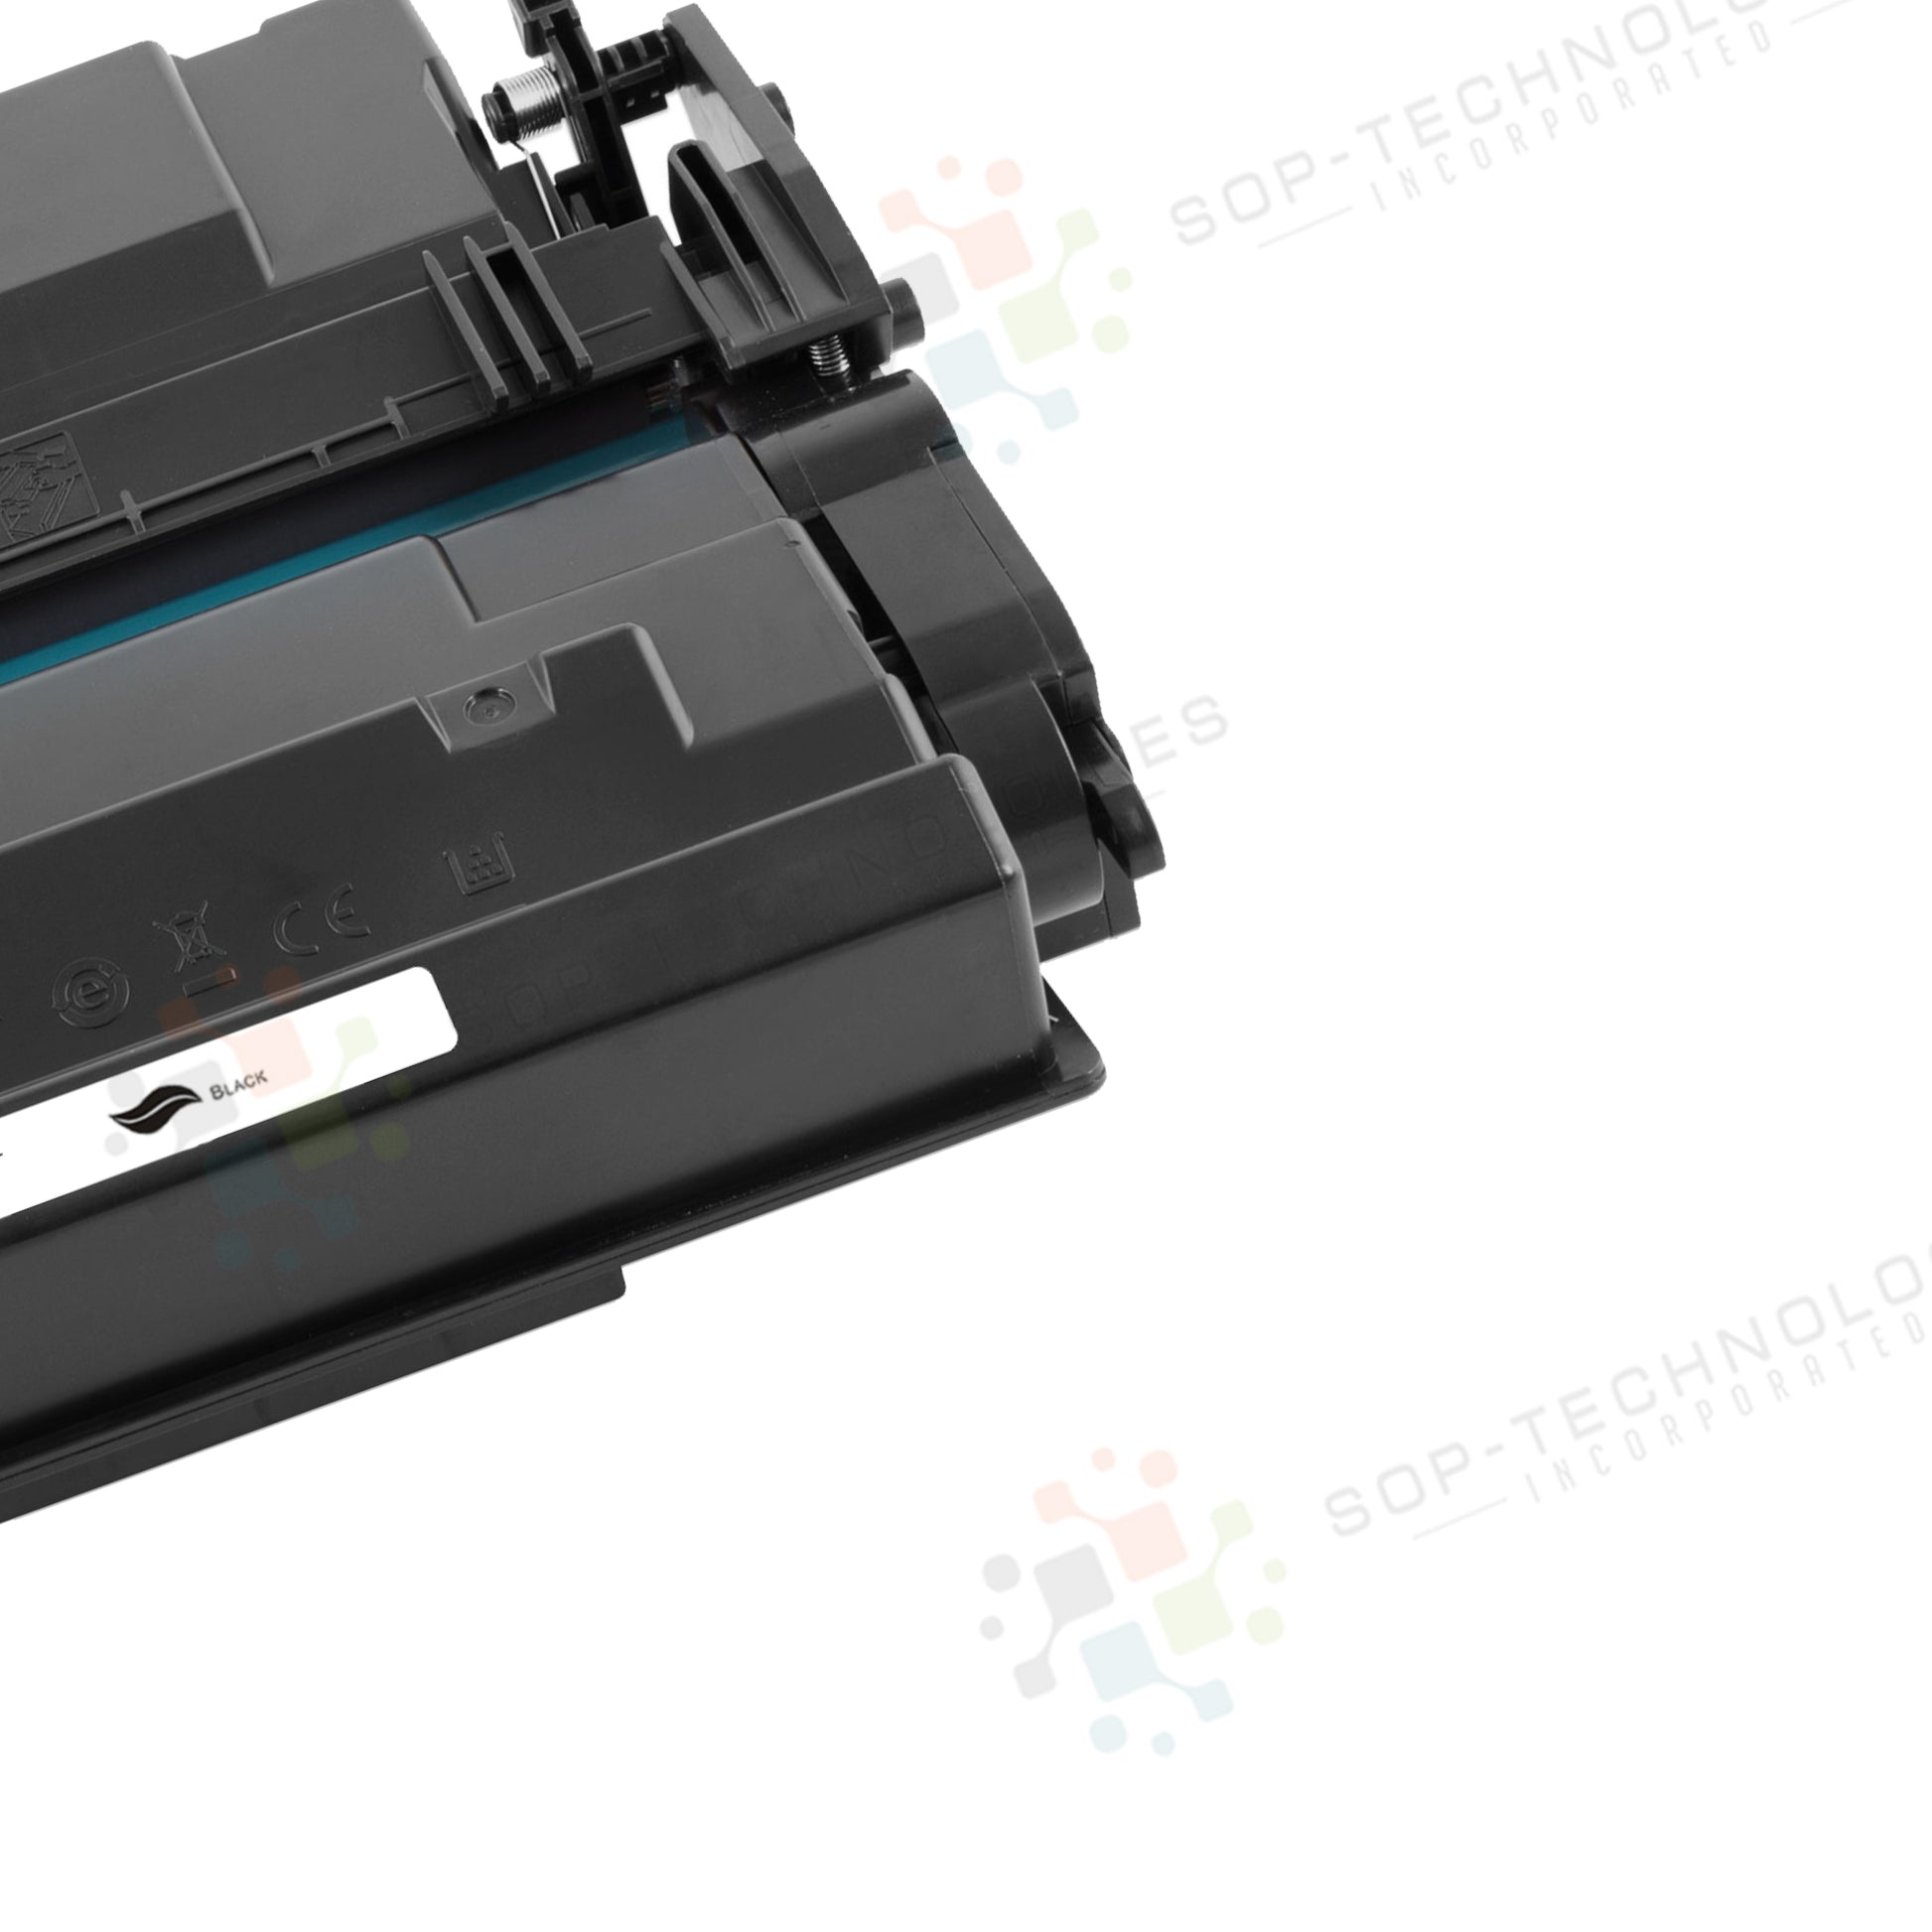 Toner Cartridges for Canon Image CLASS LBP312dn - SOP-TECHNOLOGIES, INC.